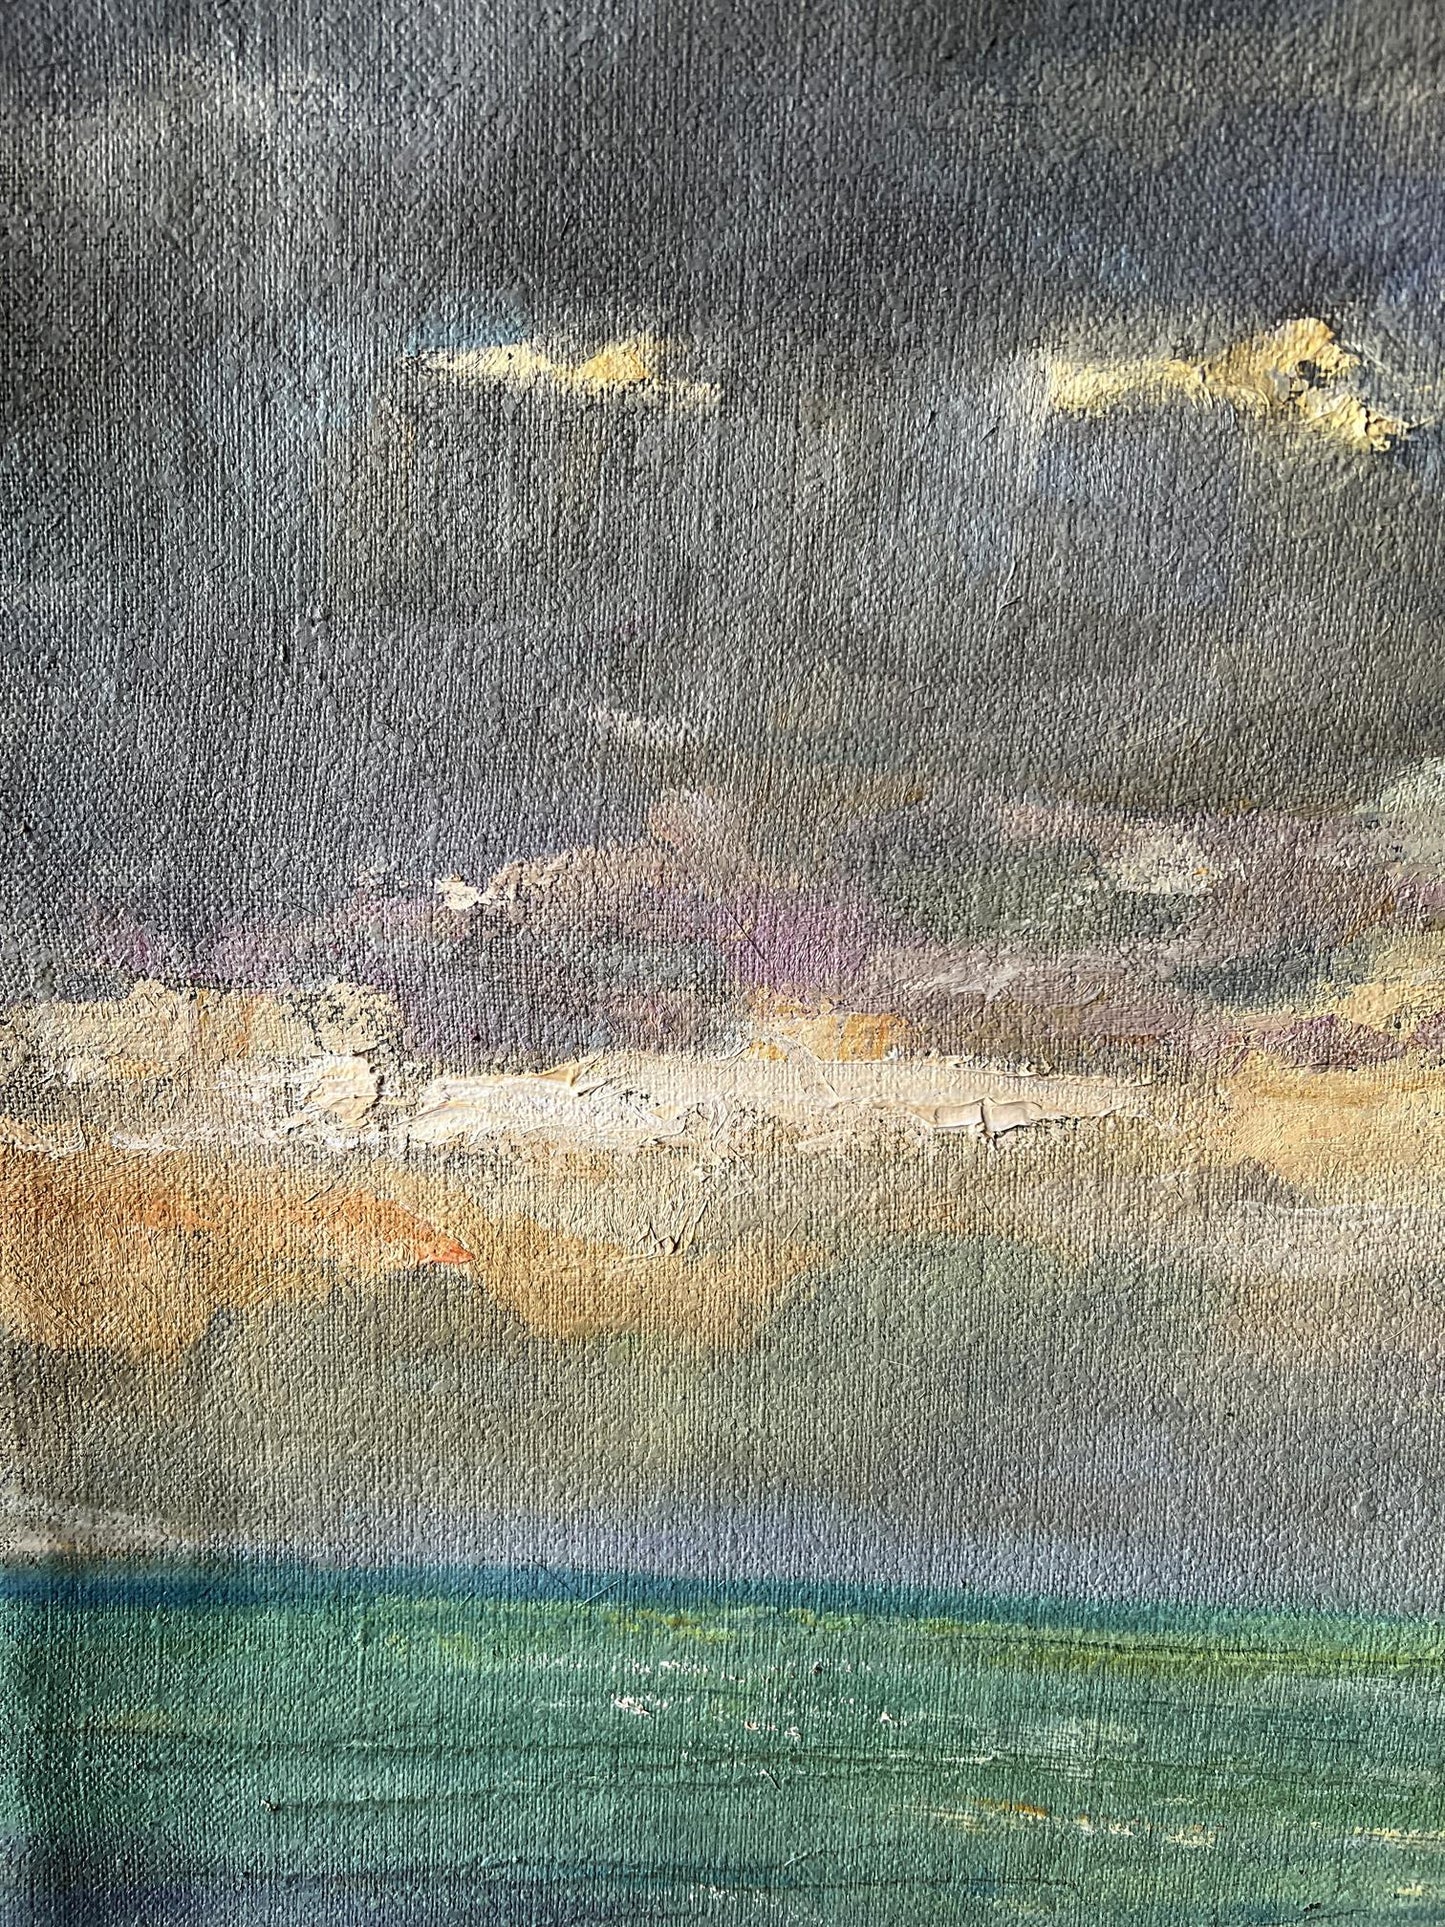 Oil painting Evening at sea V. Mishurovsky